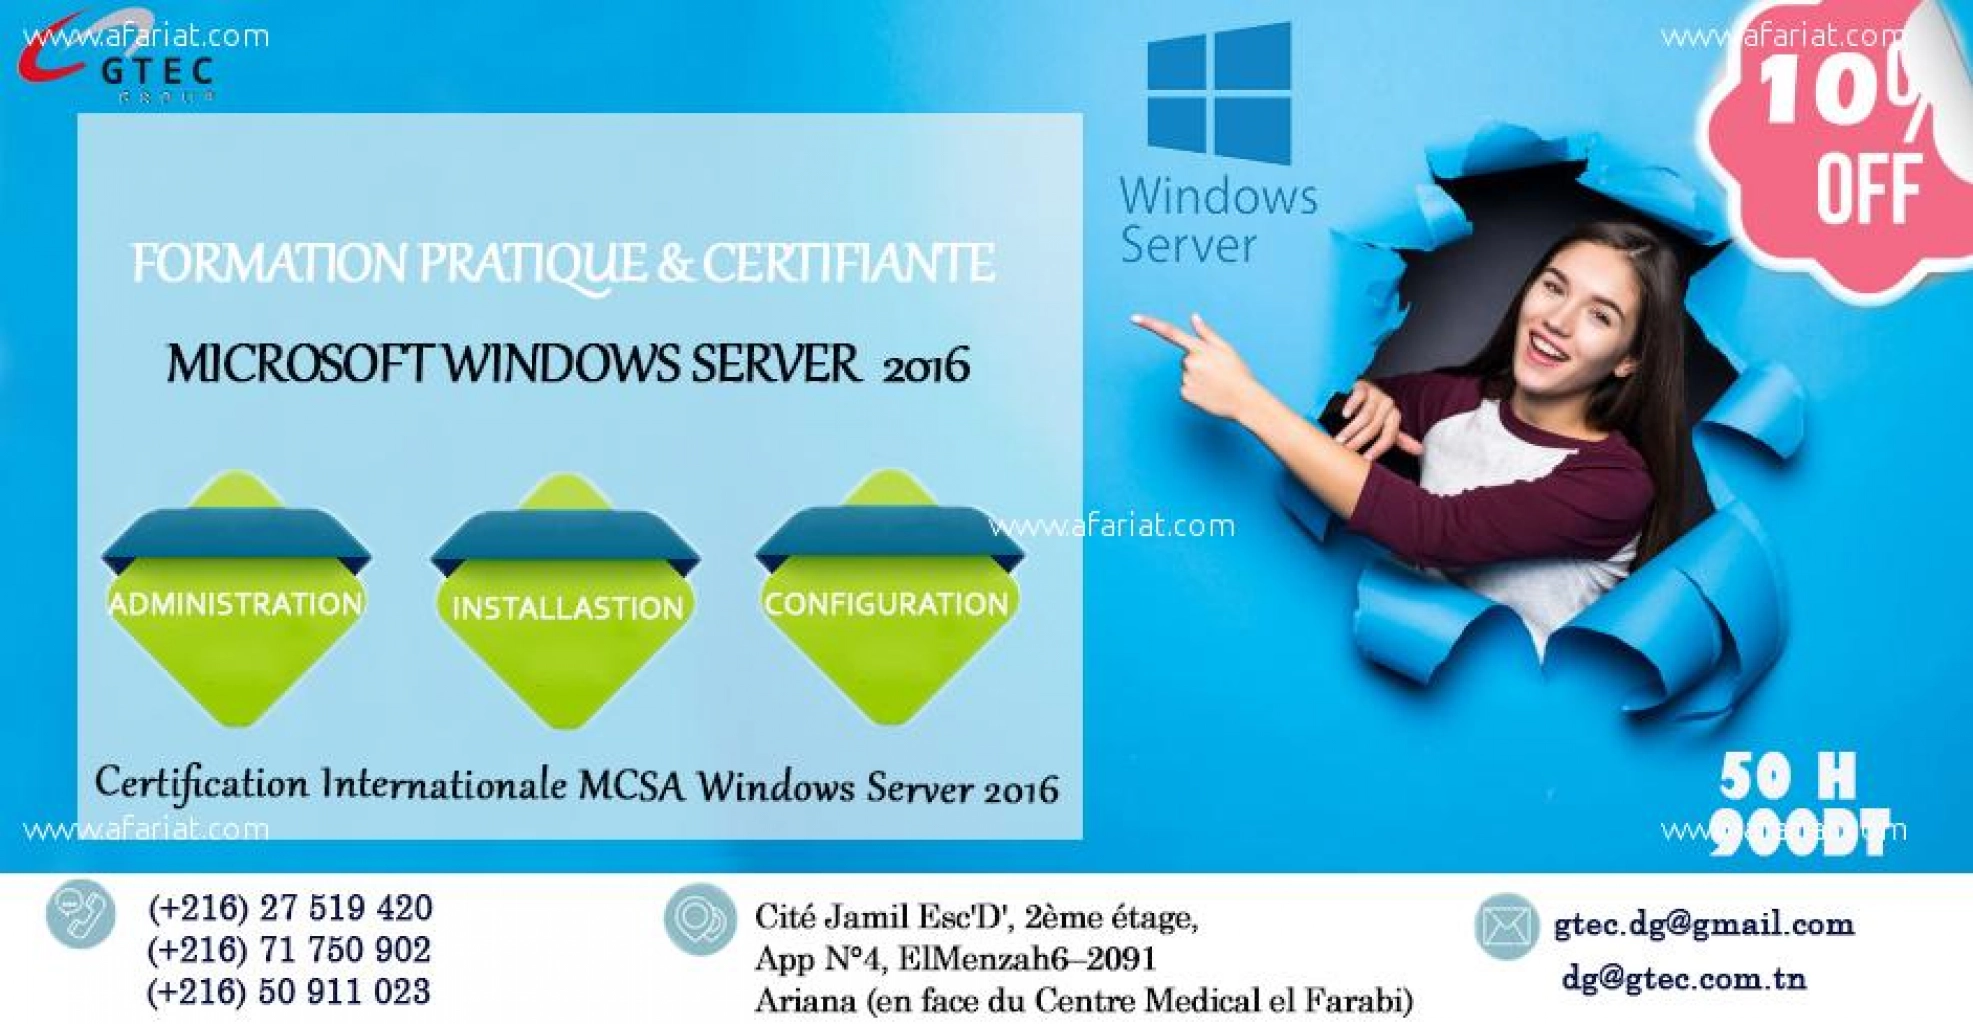 GTEC: Réduction sur la formation Windows Server 2016